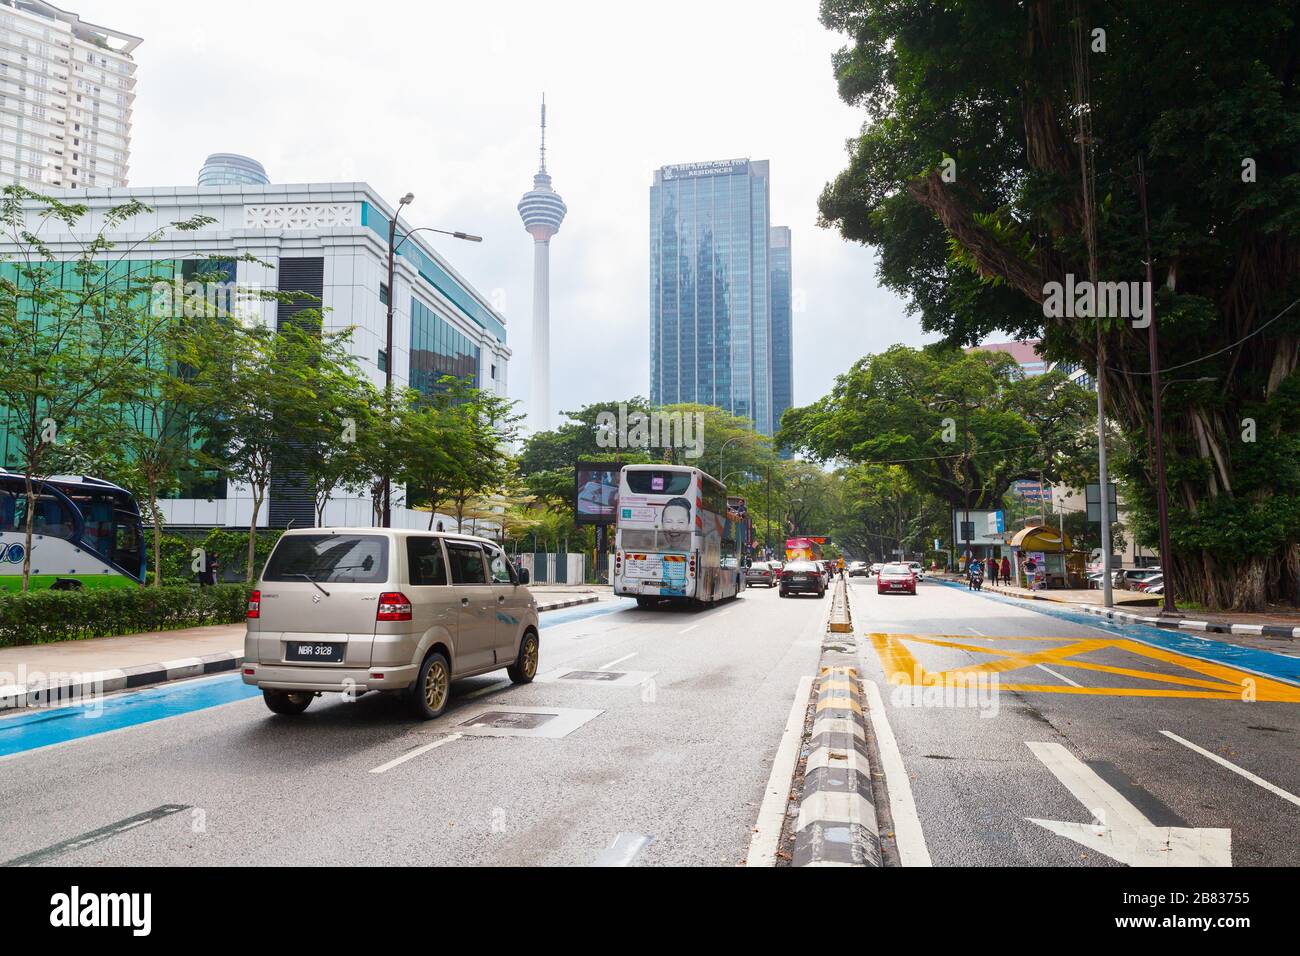 Kuala Lumpur, Malaisie - 25 novembre 2019 : vue sur la rue du centre-ville de Kuala Lumpur, les gens ordinaires et les voitures sont dans la rue avec tour de télévision sur un backgroun Banque D'Images